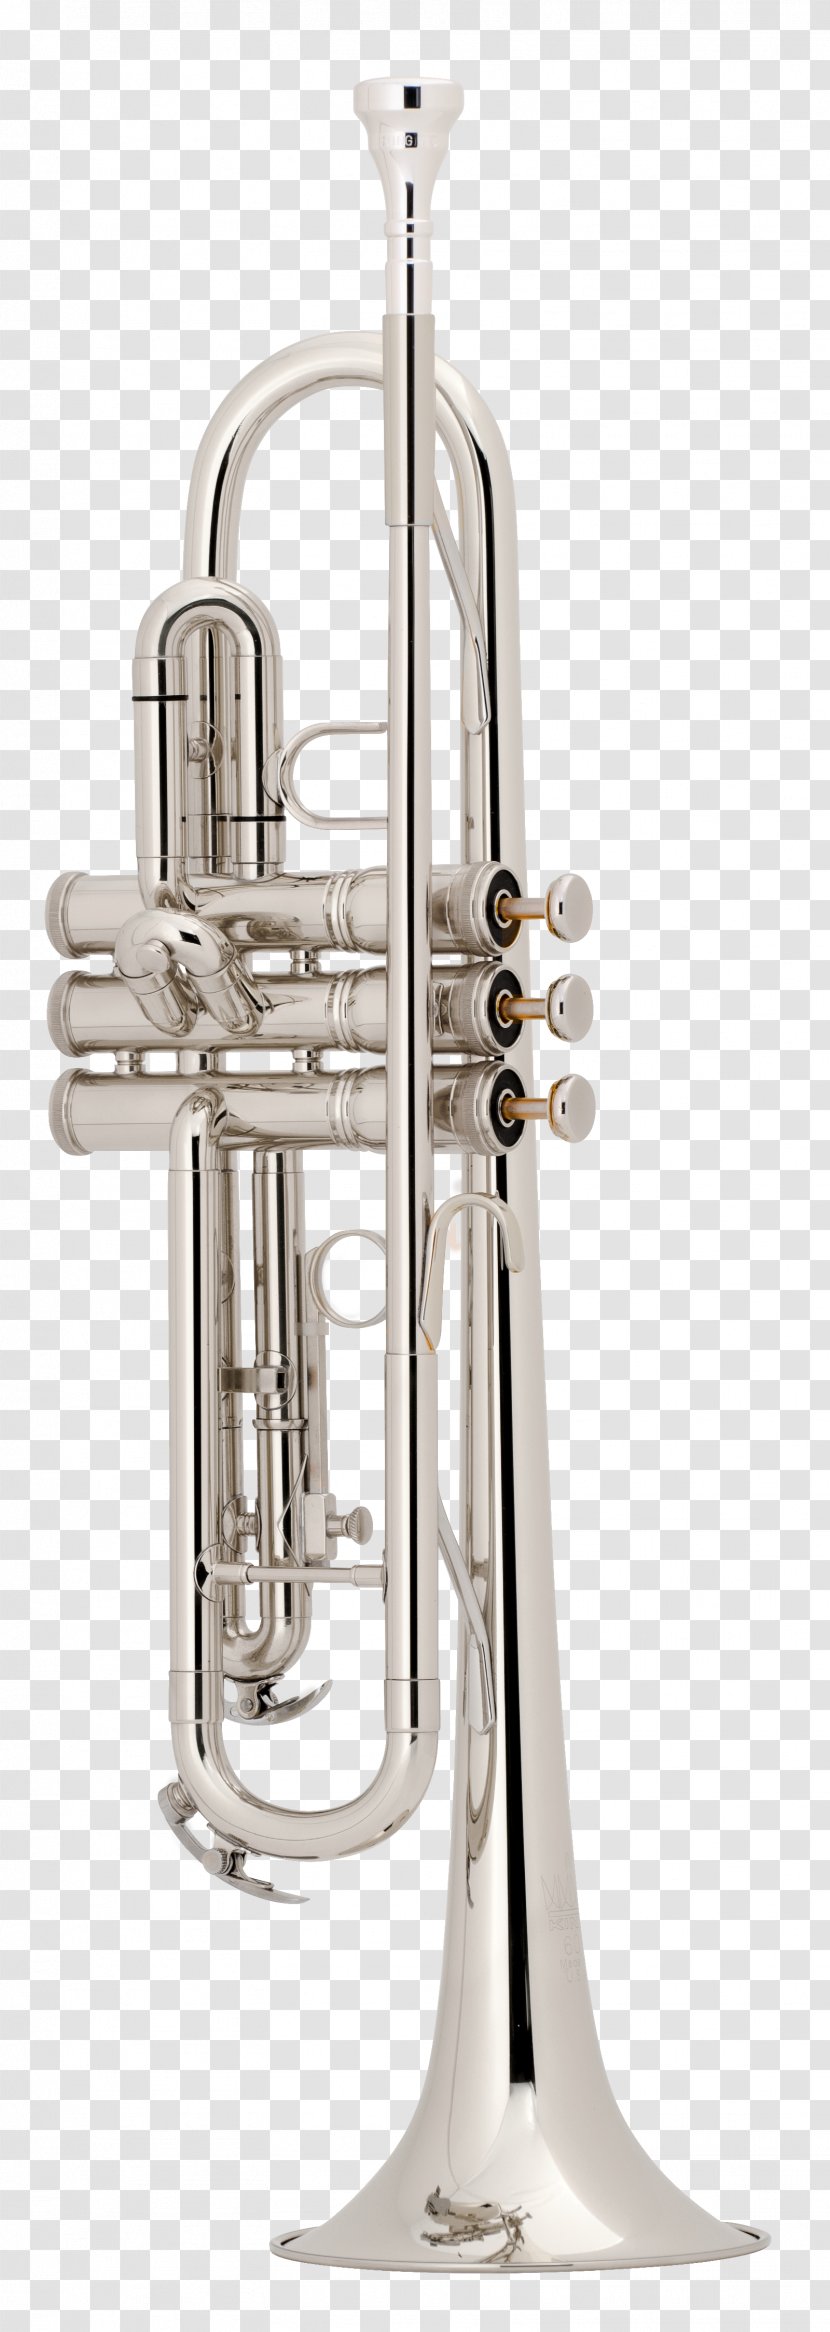 Brass Instruments Musical Trumpet Flugelhorn Cornet - Cartoon Transparent PNG